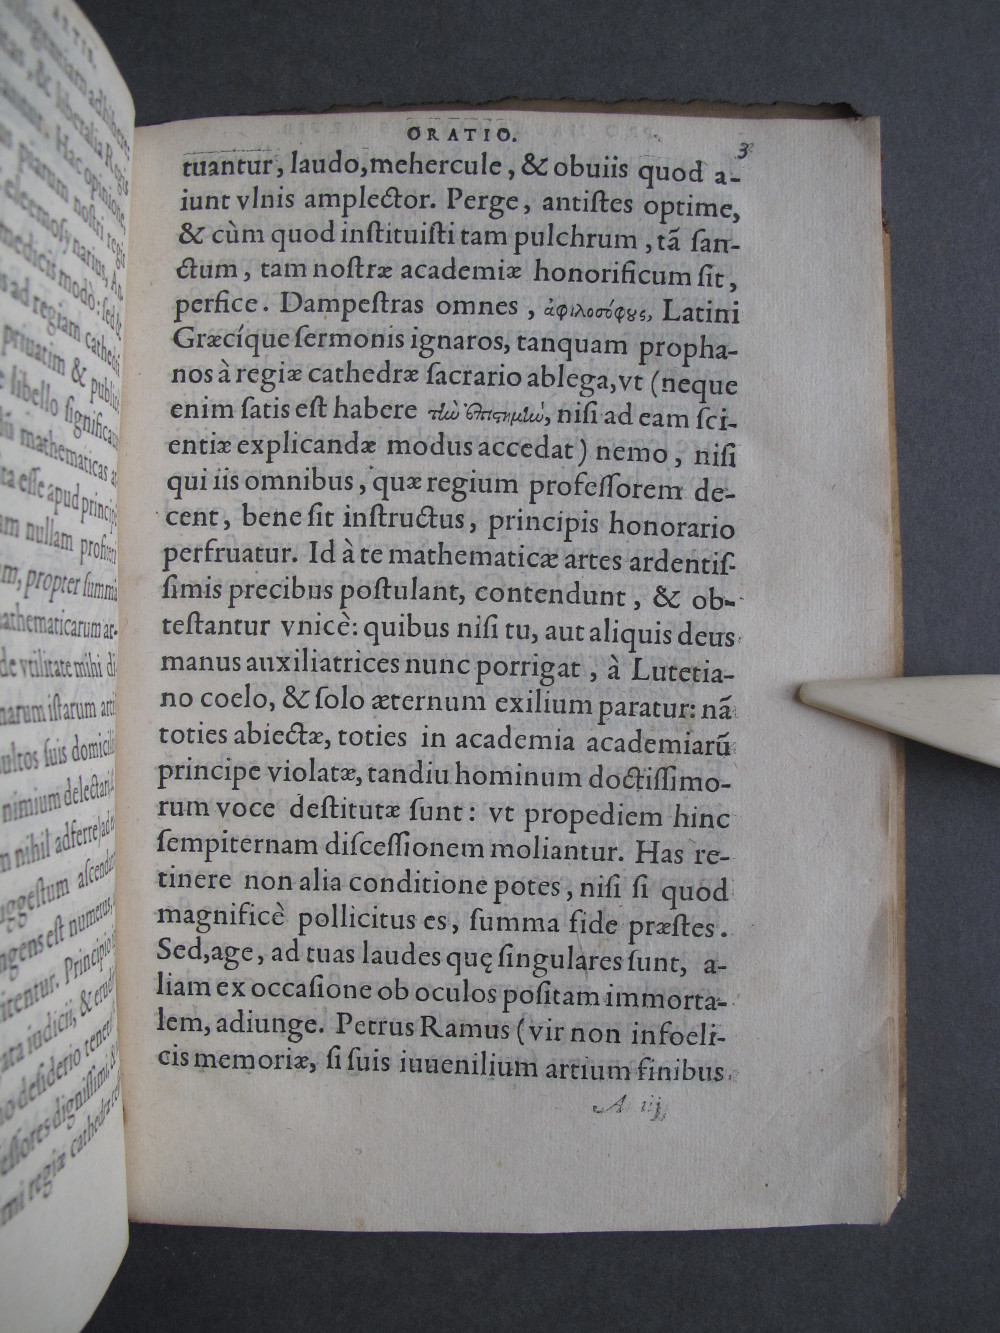 Folio 3 recto